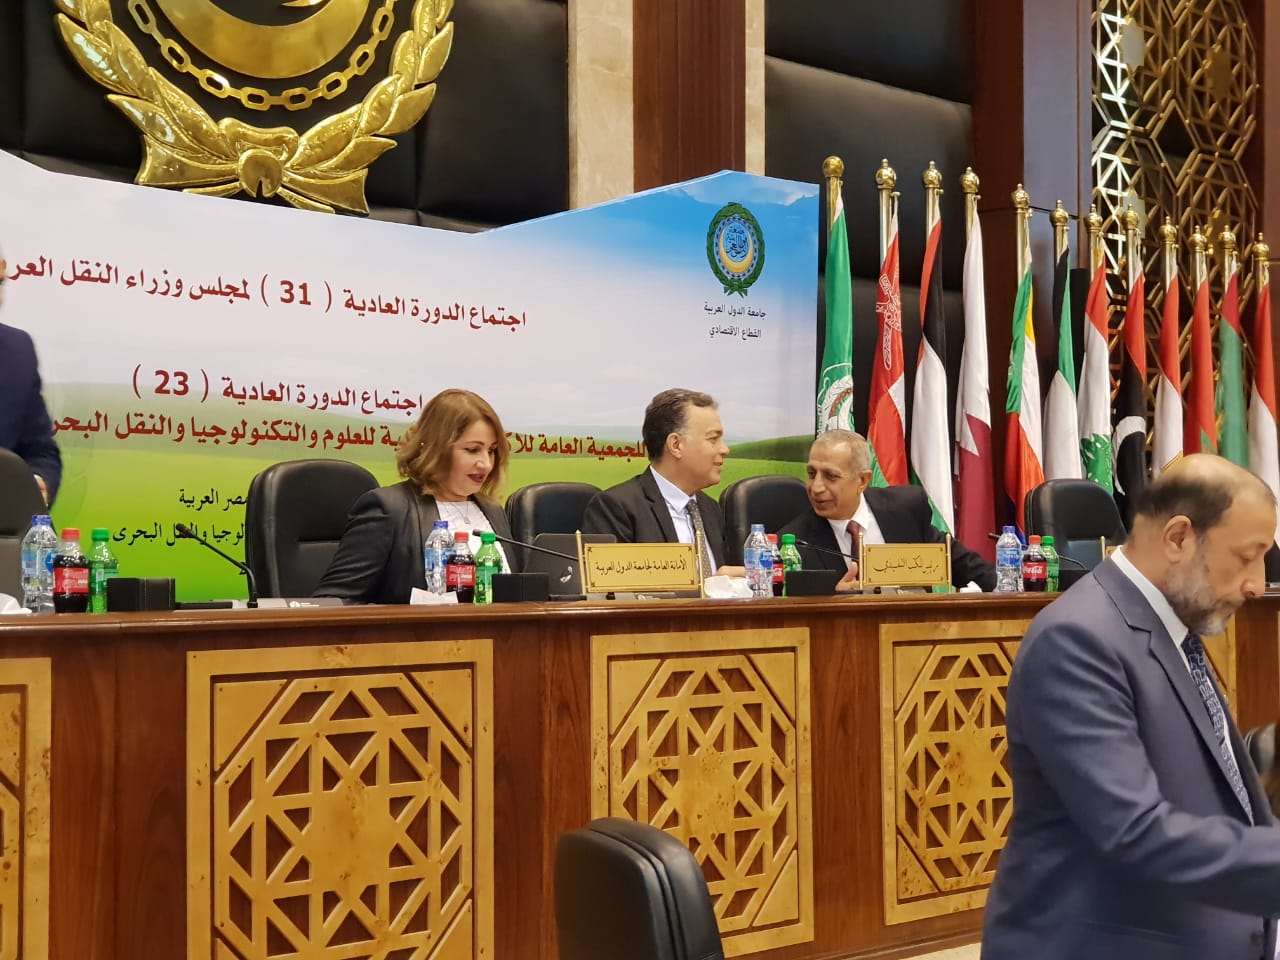  وزير النقل يفتتح  فعاليات اجتماع مجلس وزراء النقل العرب بمقر الأكاديمية العربية (3)